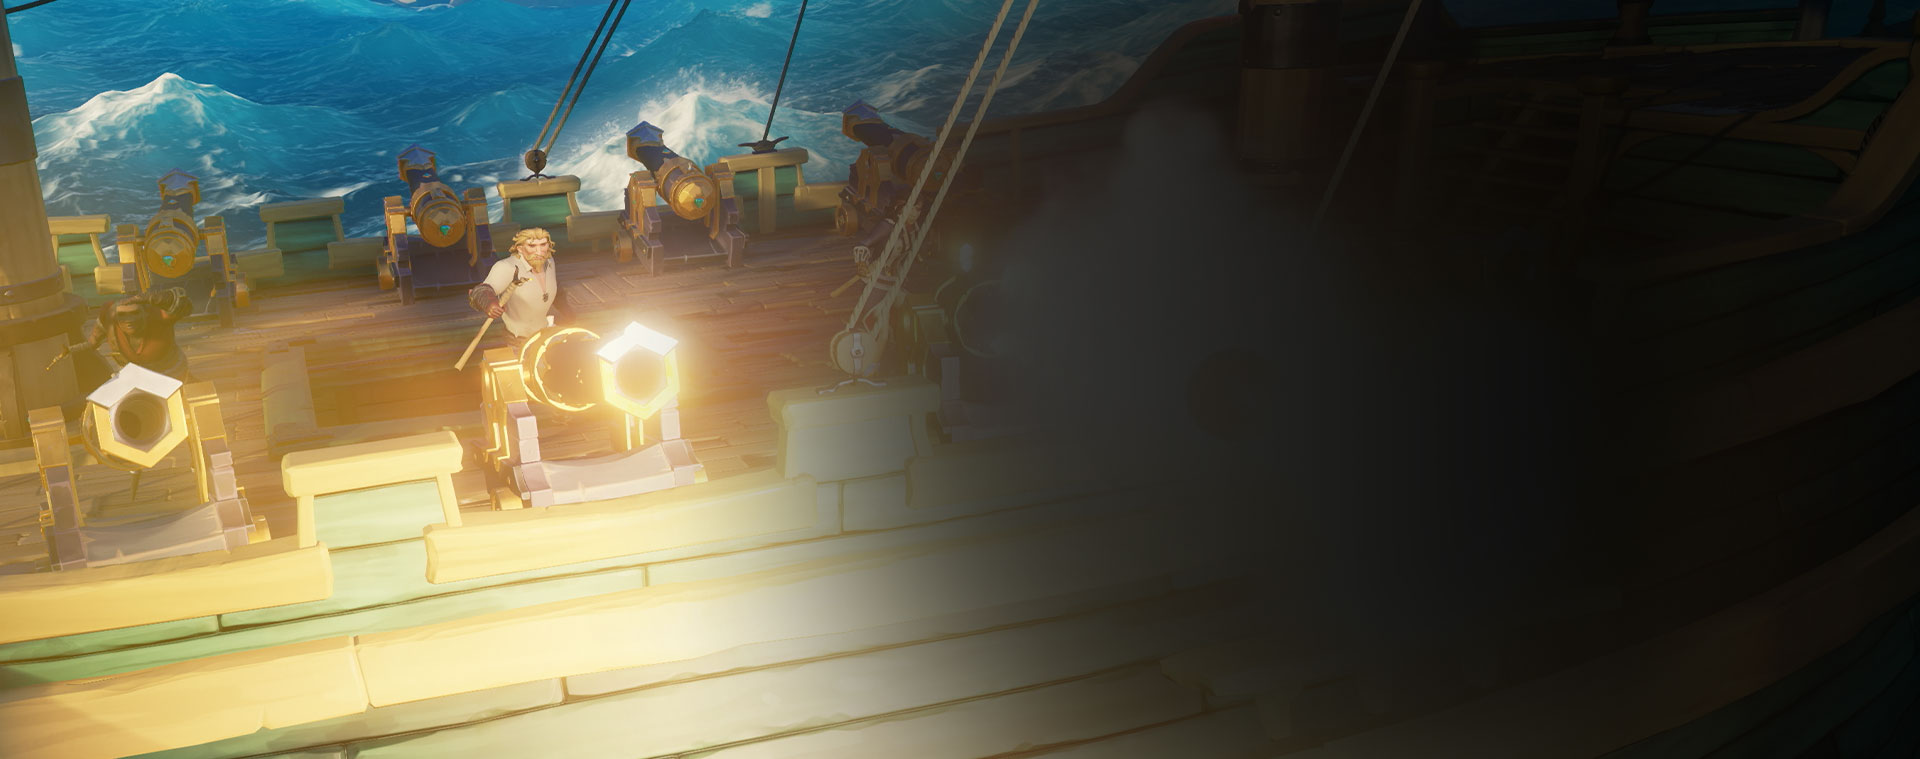 Personagens do Sea of Thieves a dispararem canhões de um navio